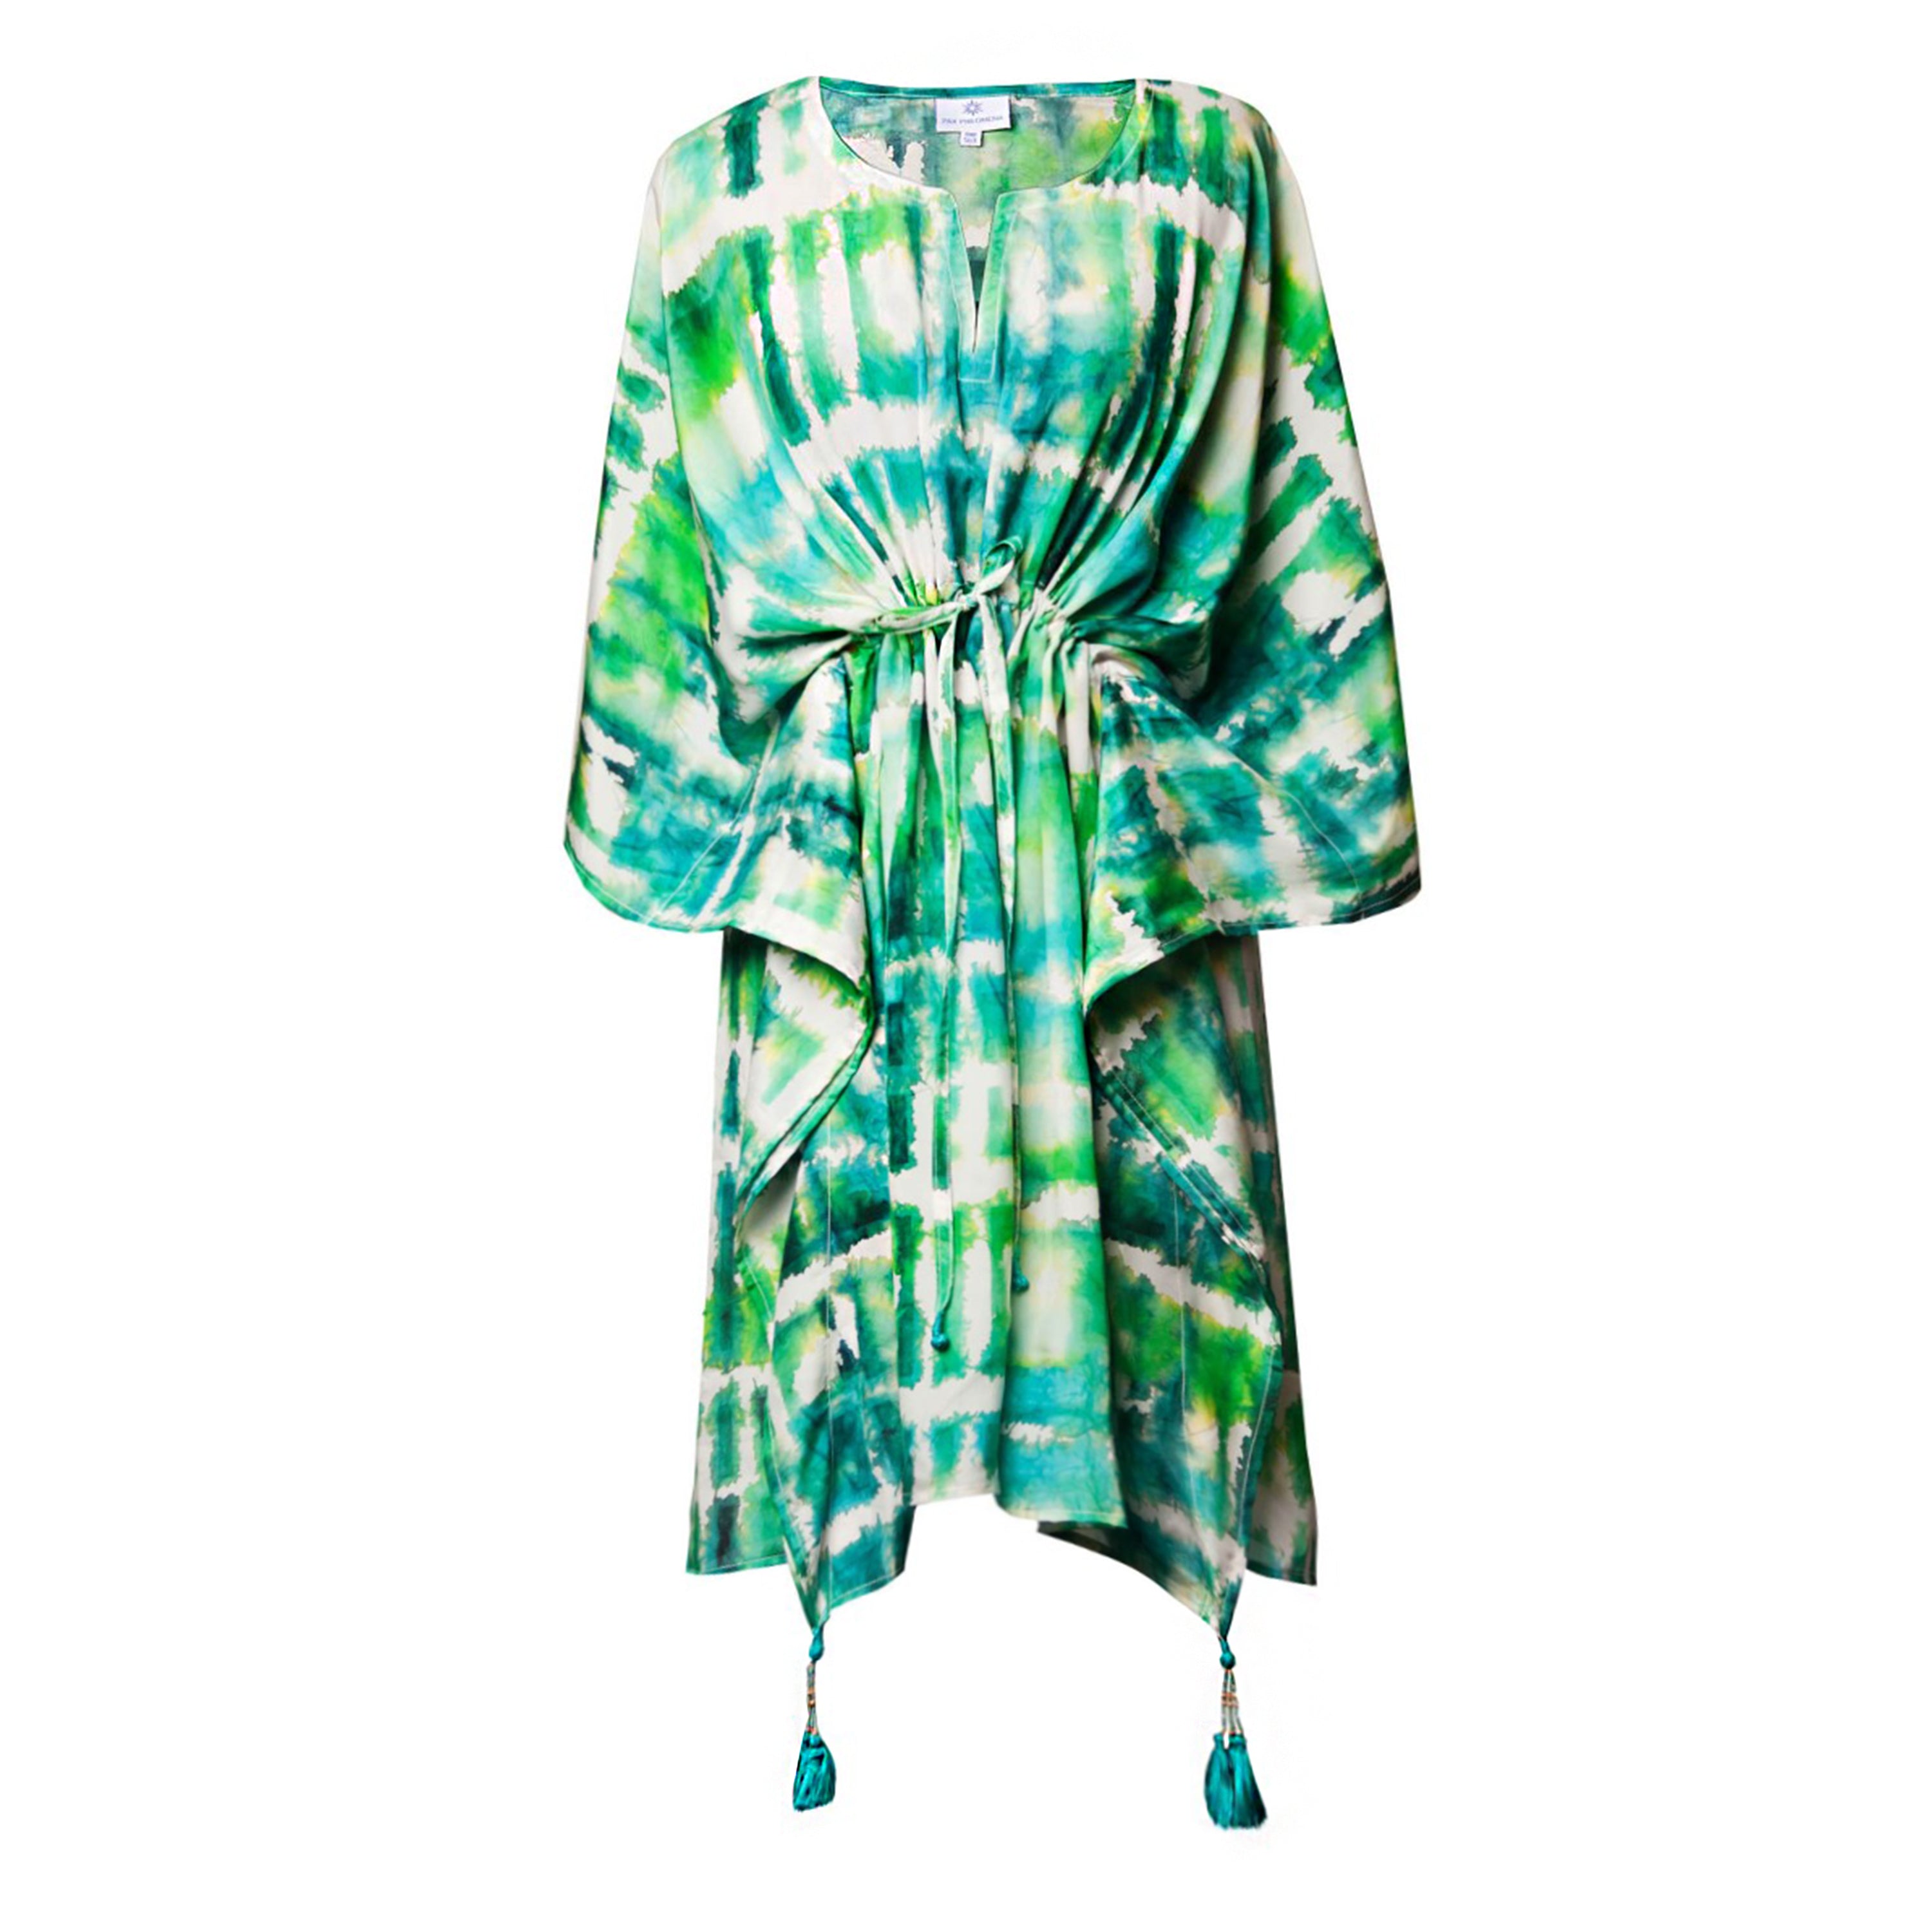 Mandala Kaftan Dress Free Size Short Length Causual Beach Wear Indian Caftan  4X | eBay